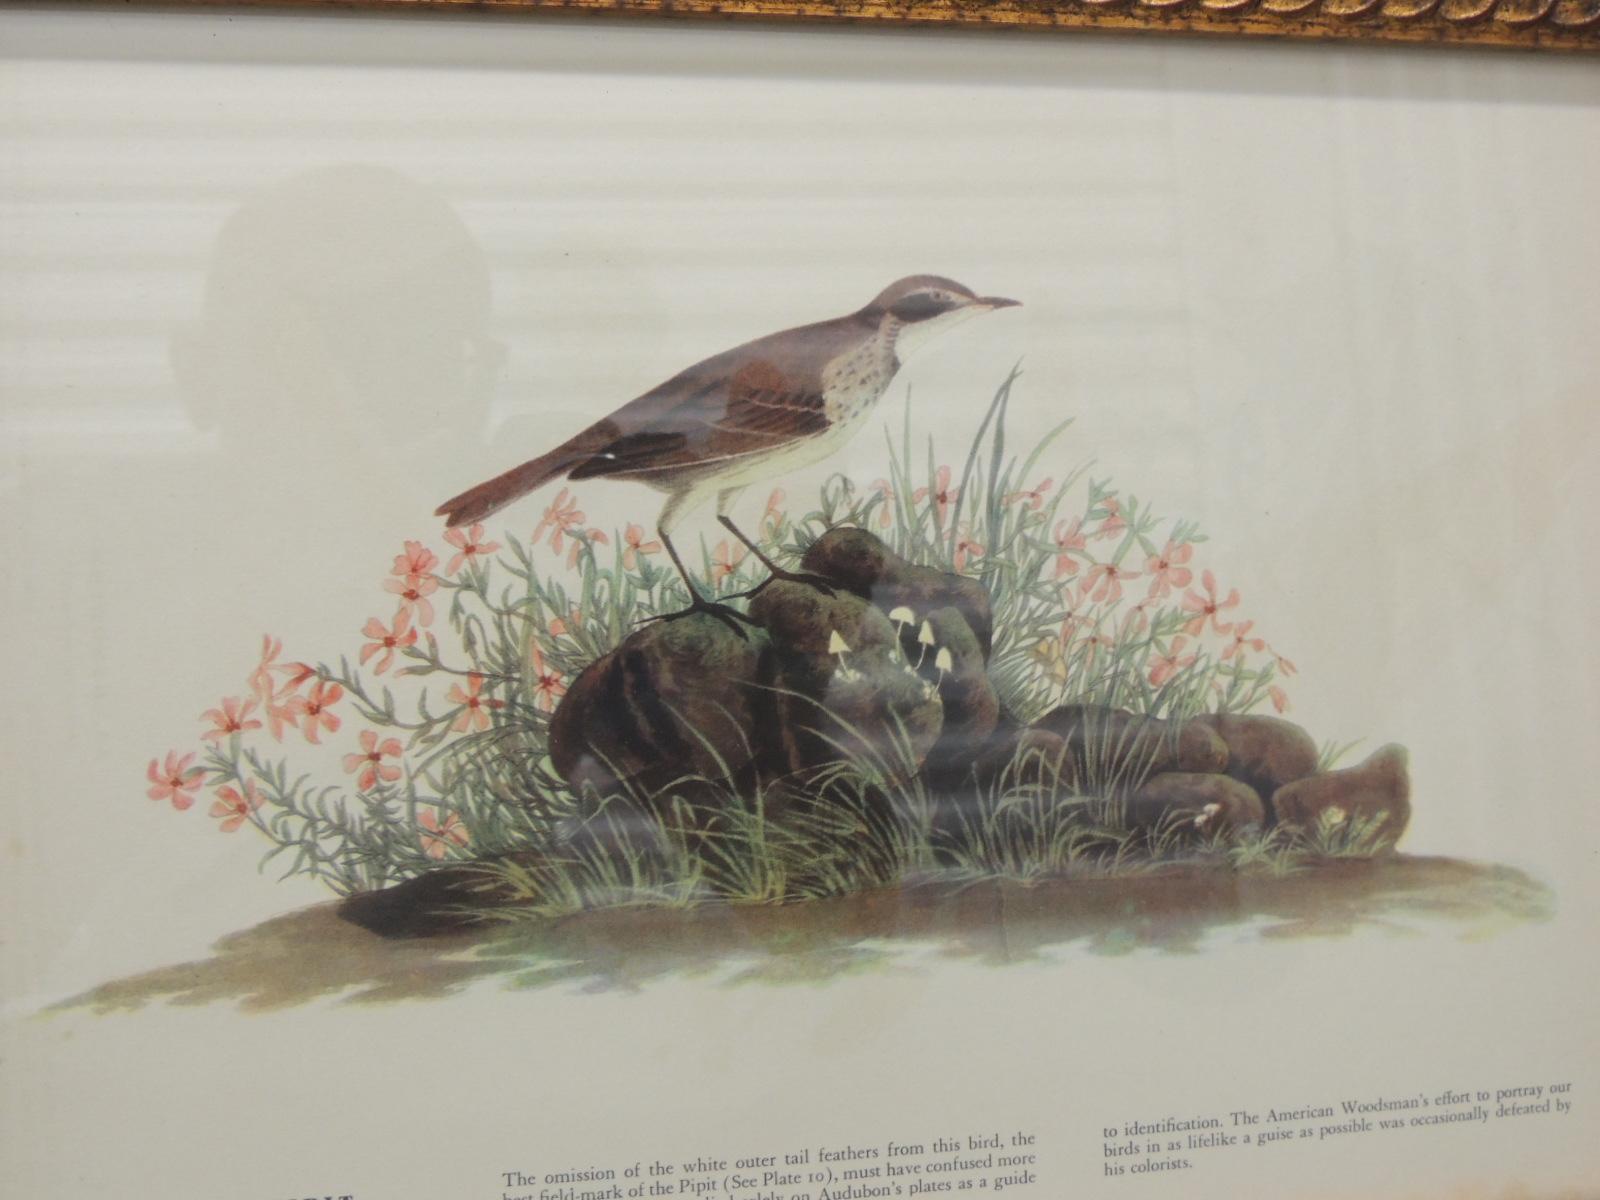 Vintage bird print in gold frame.
Fox sparrow bird
Size: 13.5